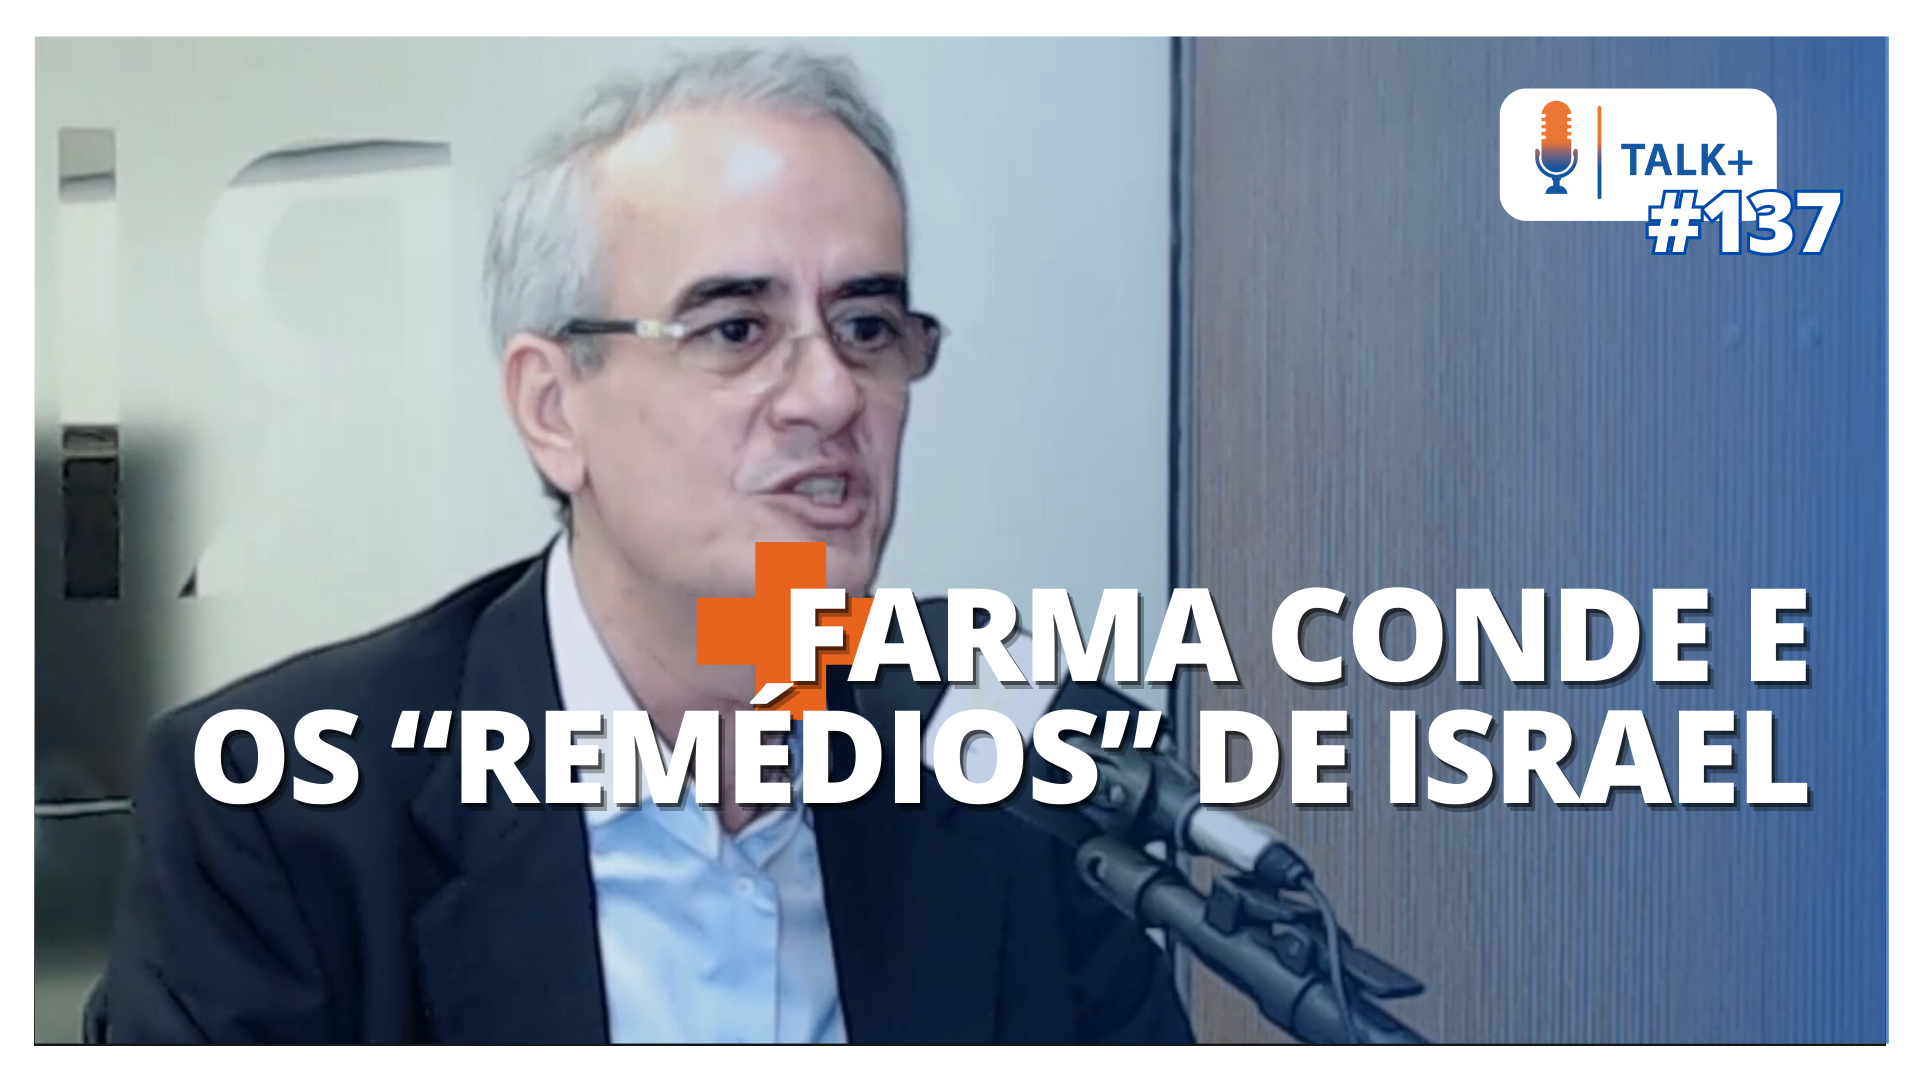 TALK+ #137: Manoel Conde, fundador da Farma Conde